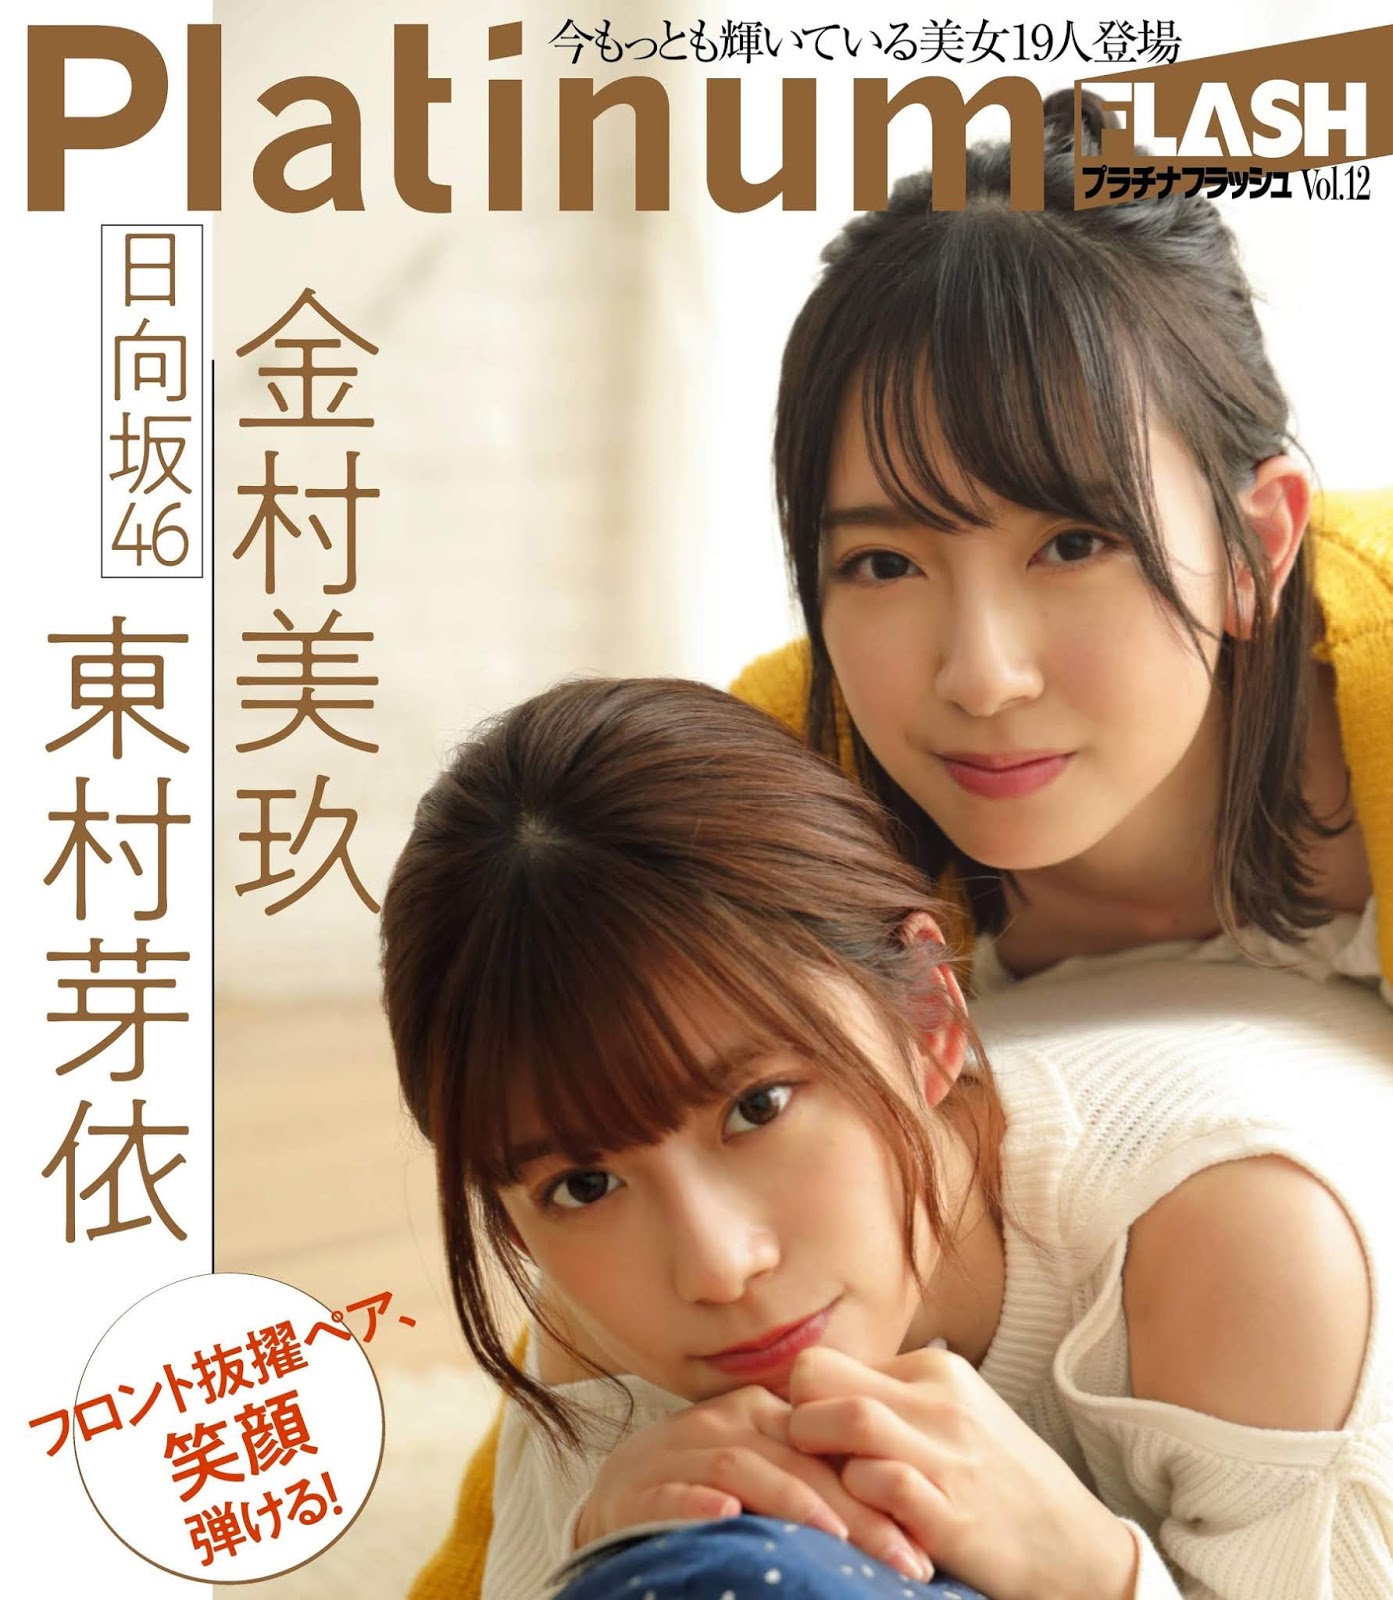 東村芽依 & 金村美玖, Platinum FLASH Vol.12 2020.2.14